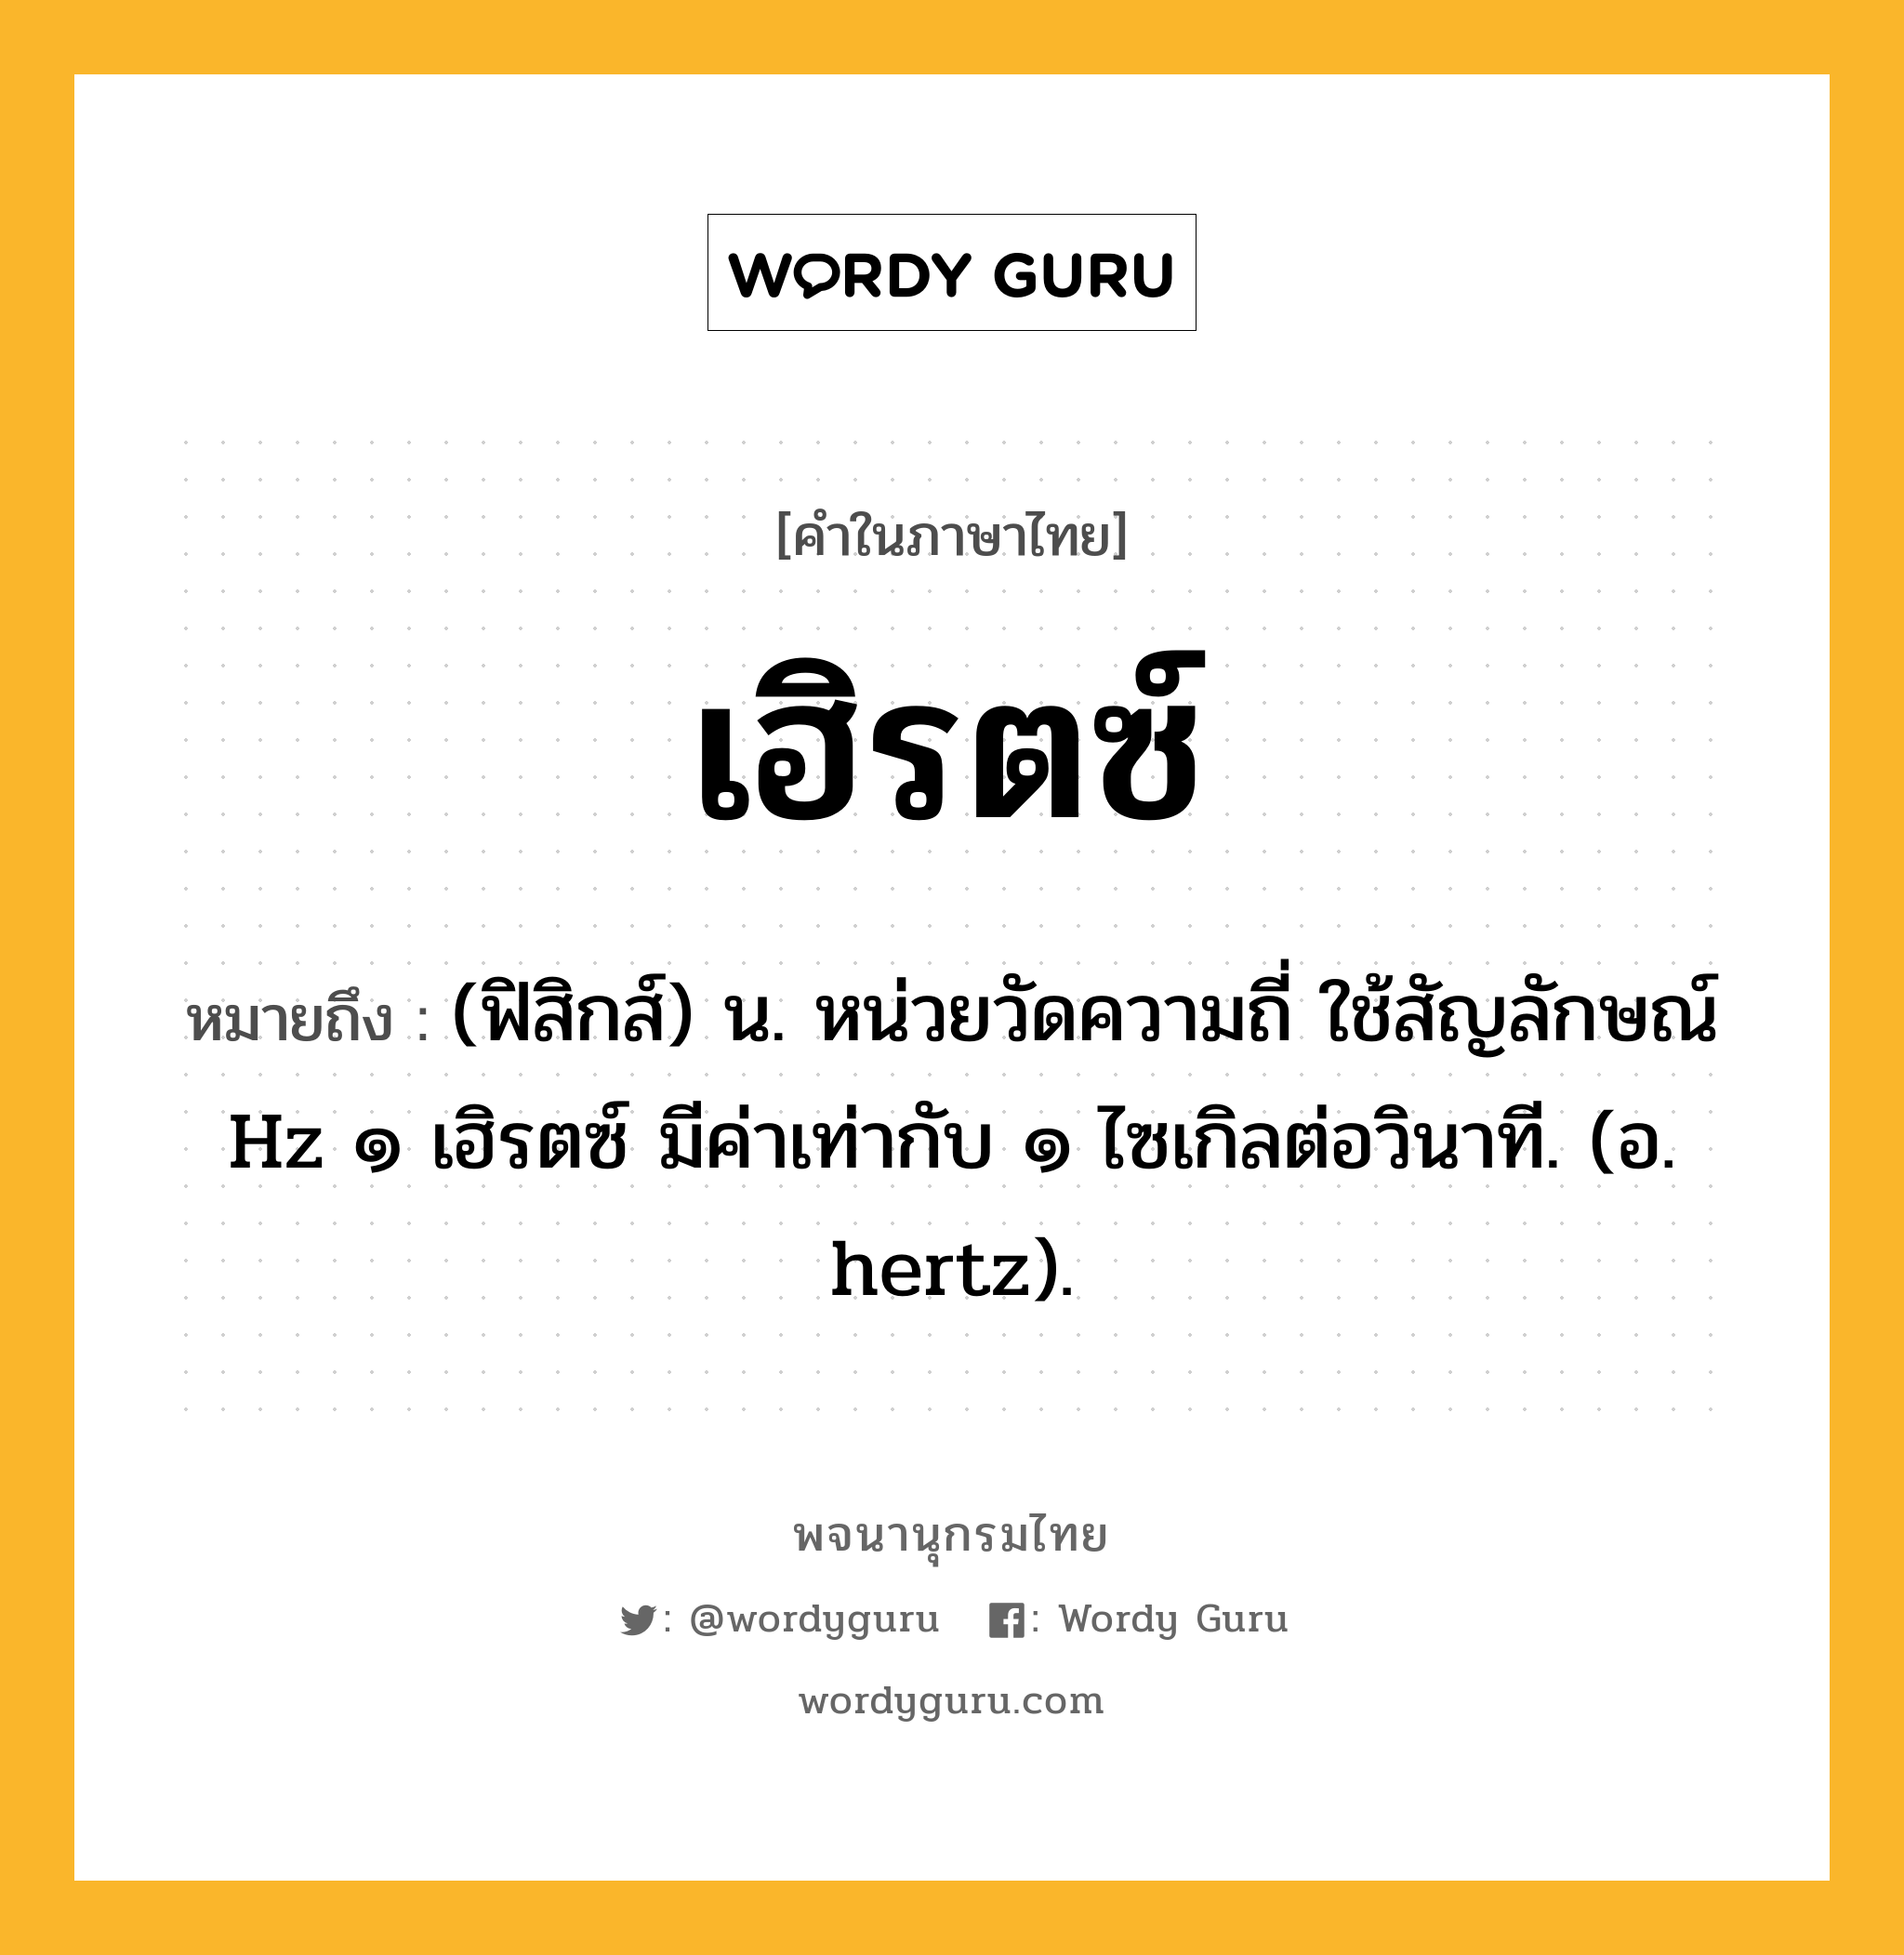 เฮิรตซ์ หมายถึงอะไร?, คำในภาษาไทย เฮิรตซ์ หมายถึง (ฟิสิกส์) น. หน่วยวัดความถี่ ใช้สัญลักษณ์ Hz ๑ เฮิรตซ์ มีค่าเท่ากับ ๑ ไซเกิลต่อวินาที. (อ. hertz).